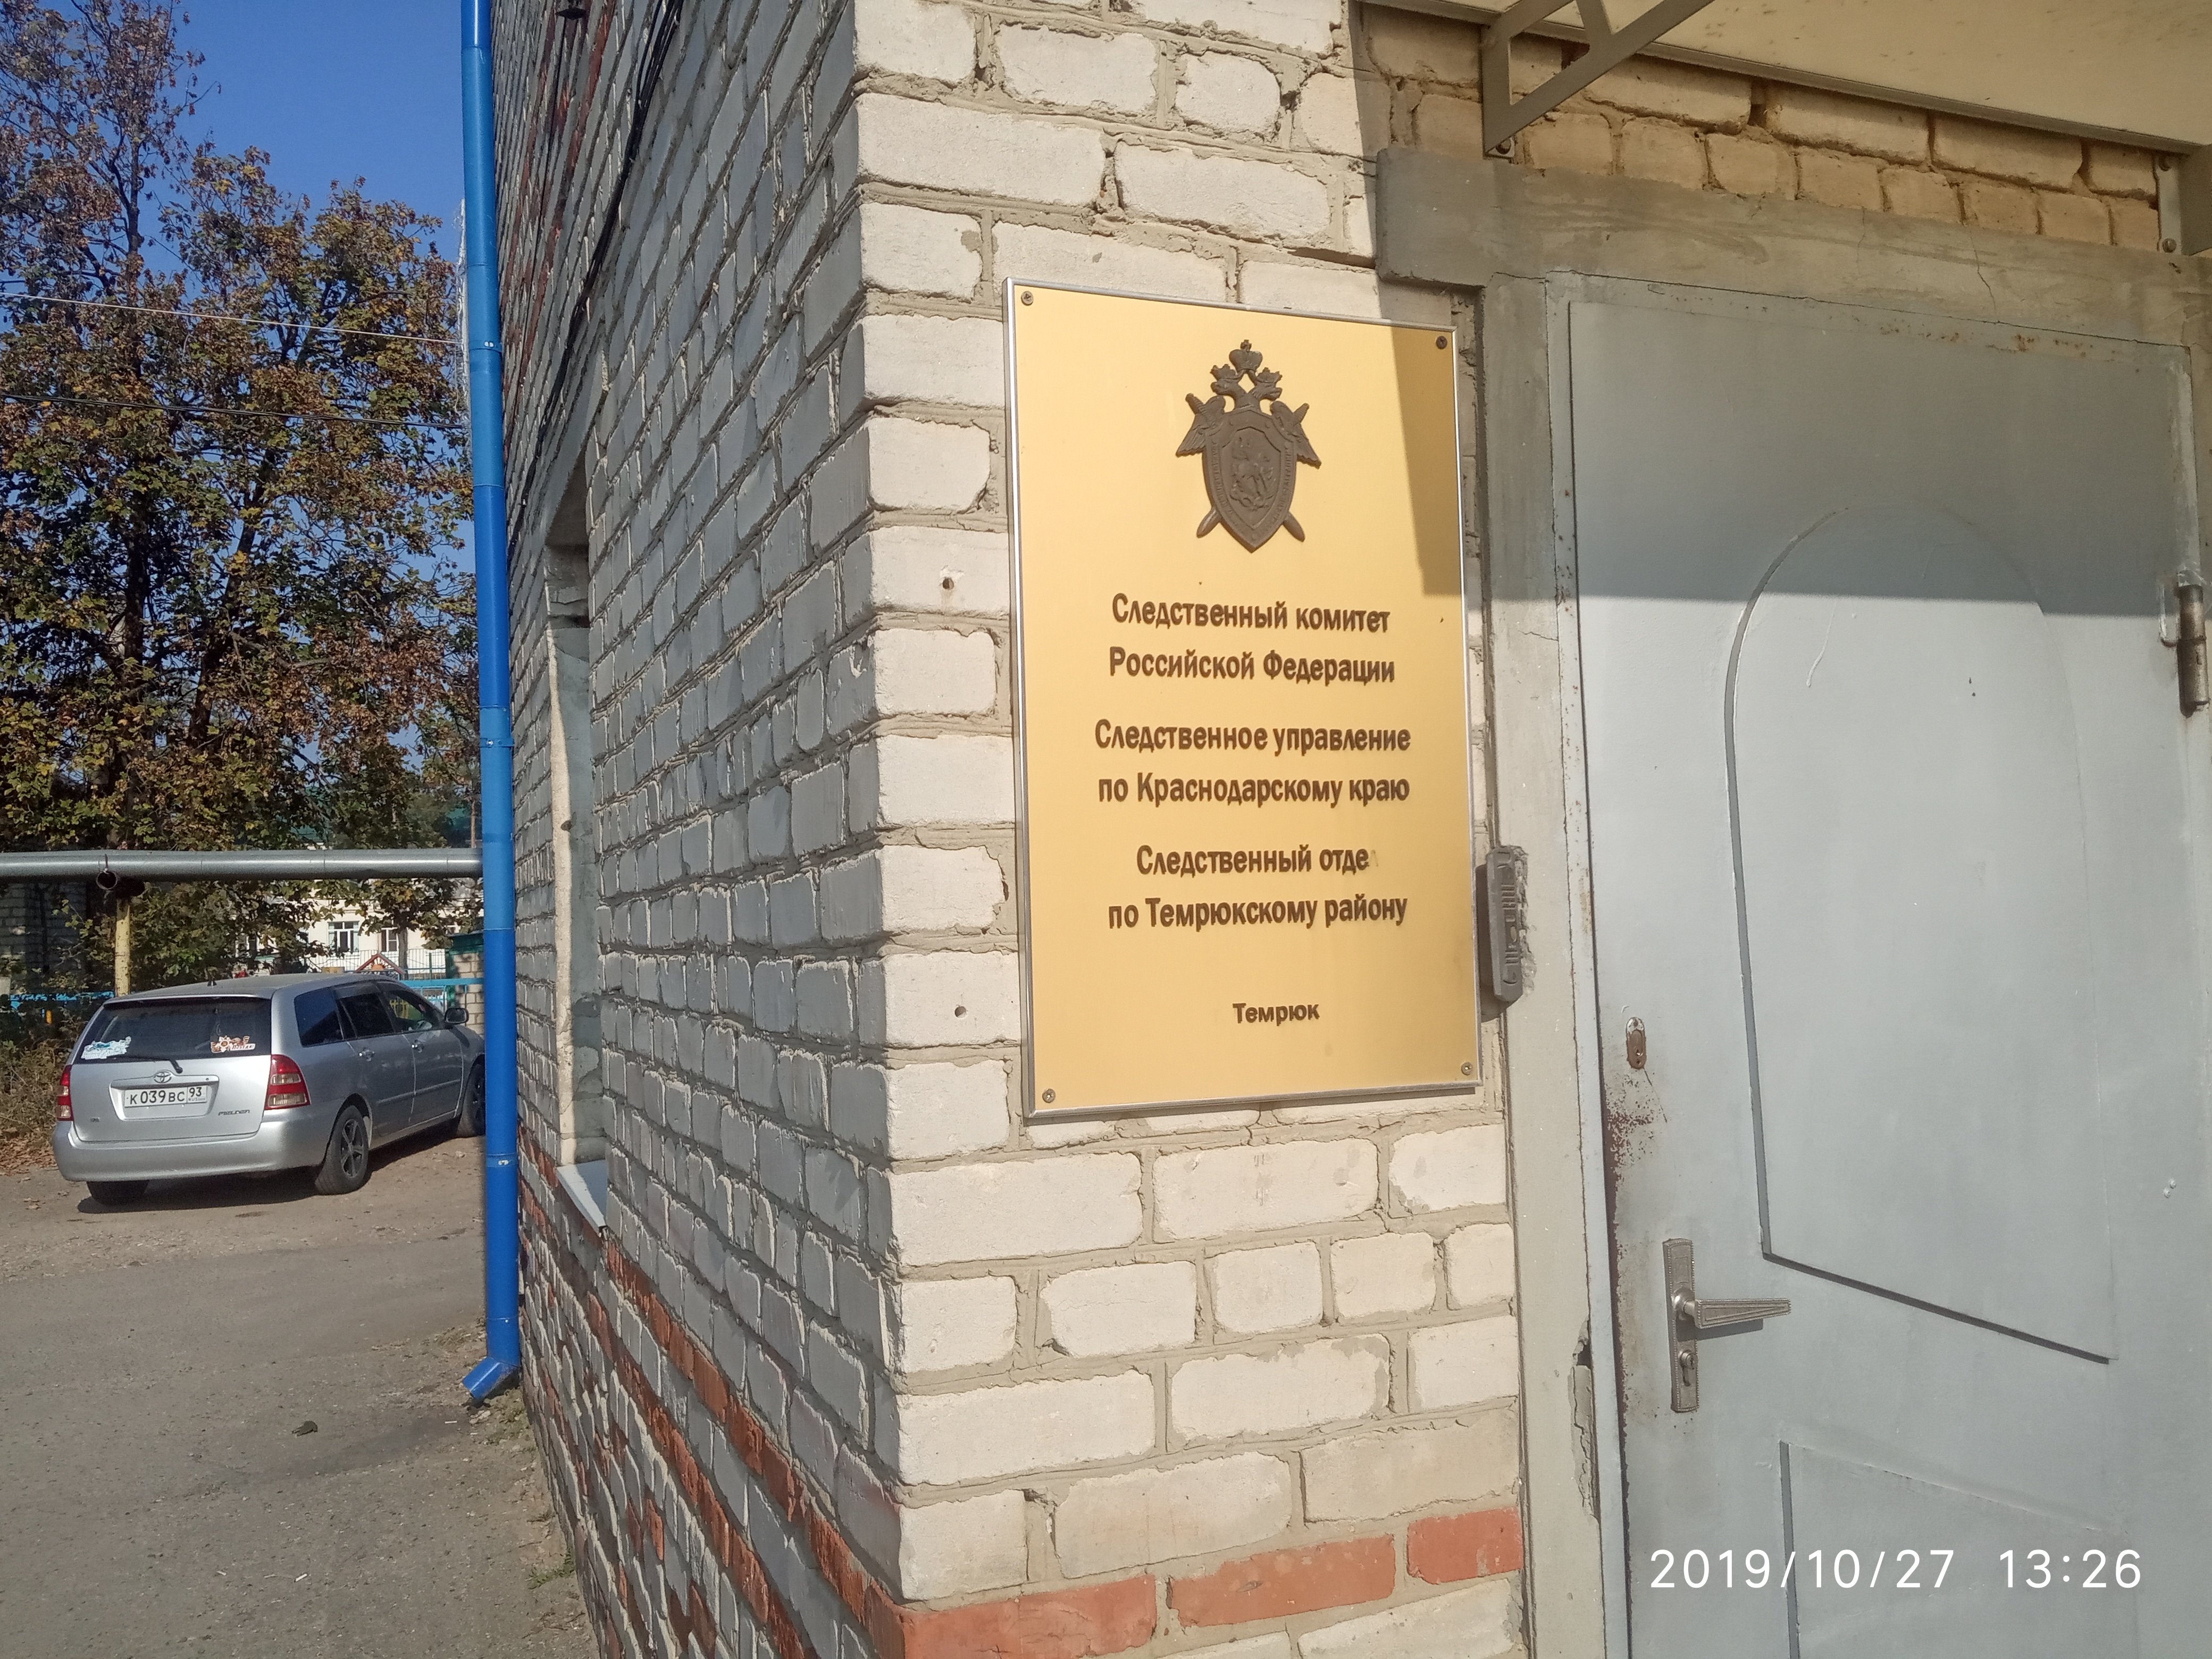 Следственный отдел по Темрюкскому району, следственный комитет, ул. Карла  Маркса, 151, Темрюк — Яндекс Карты